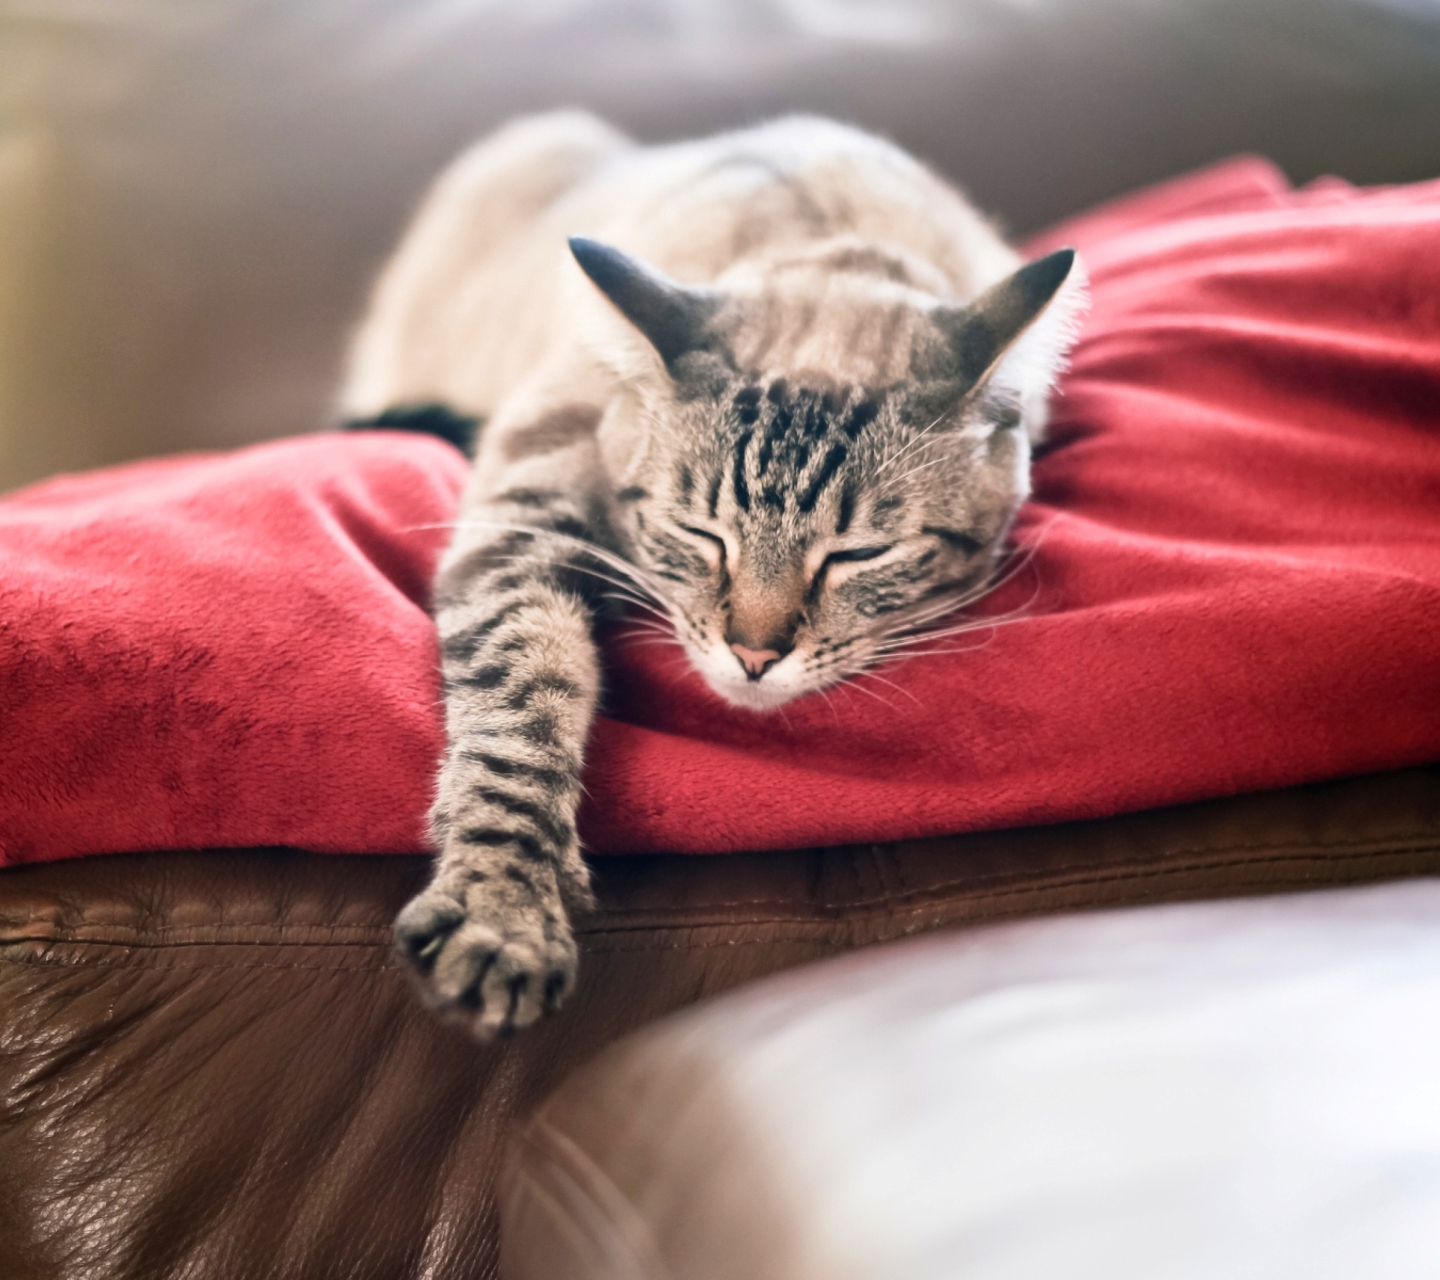 Обои Cat Sleeping On Red Plaid 1440x1280